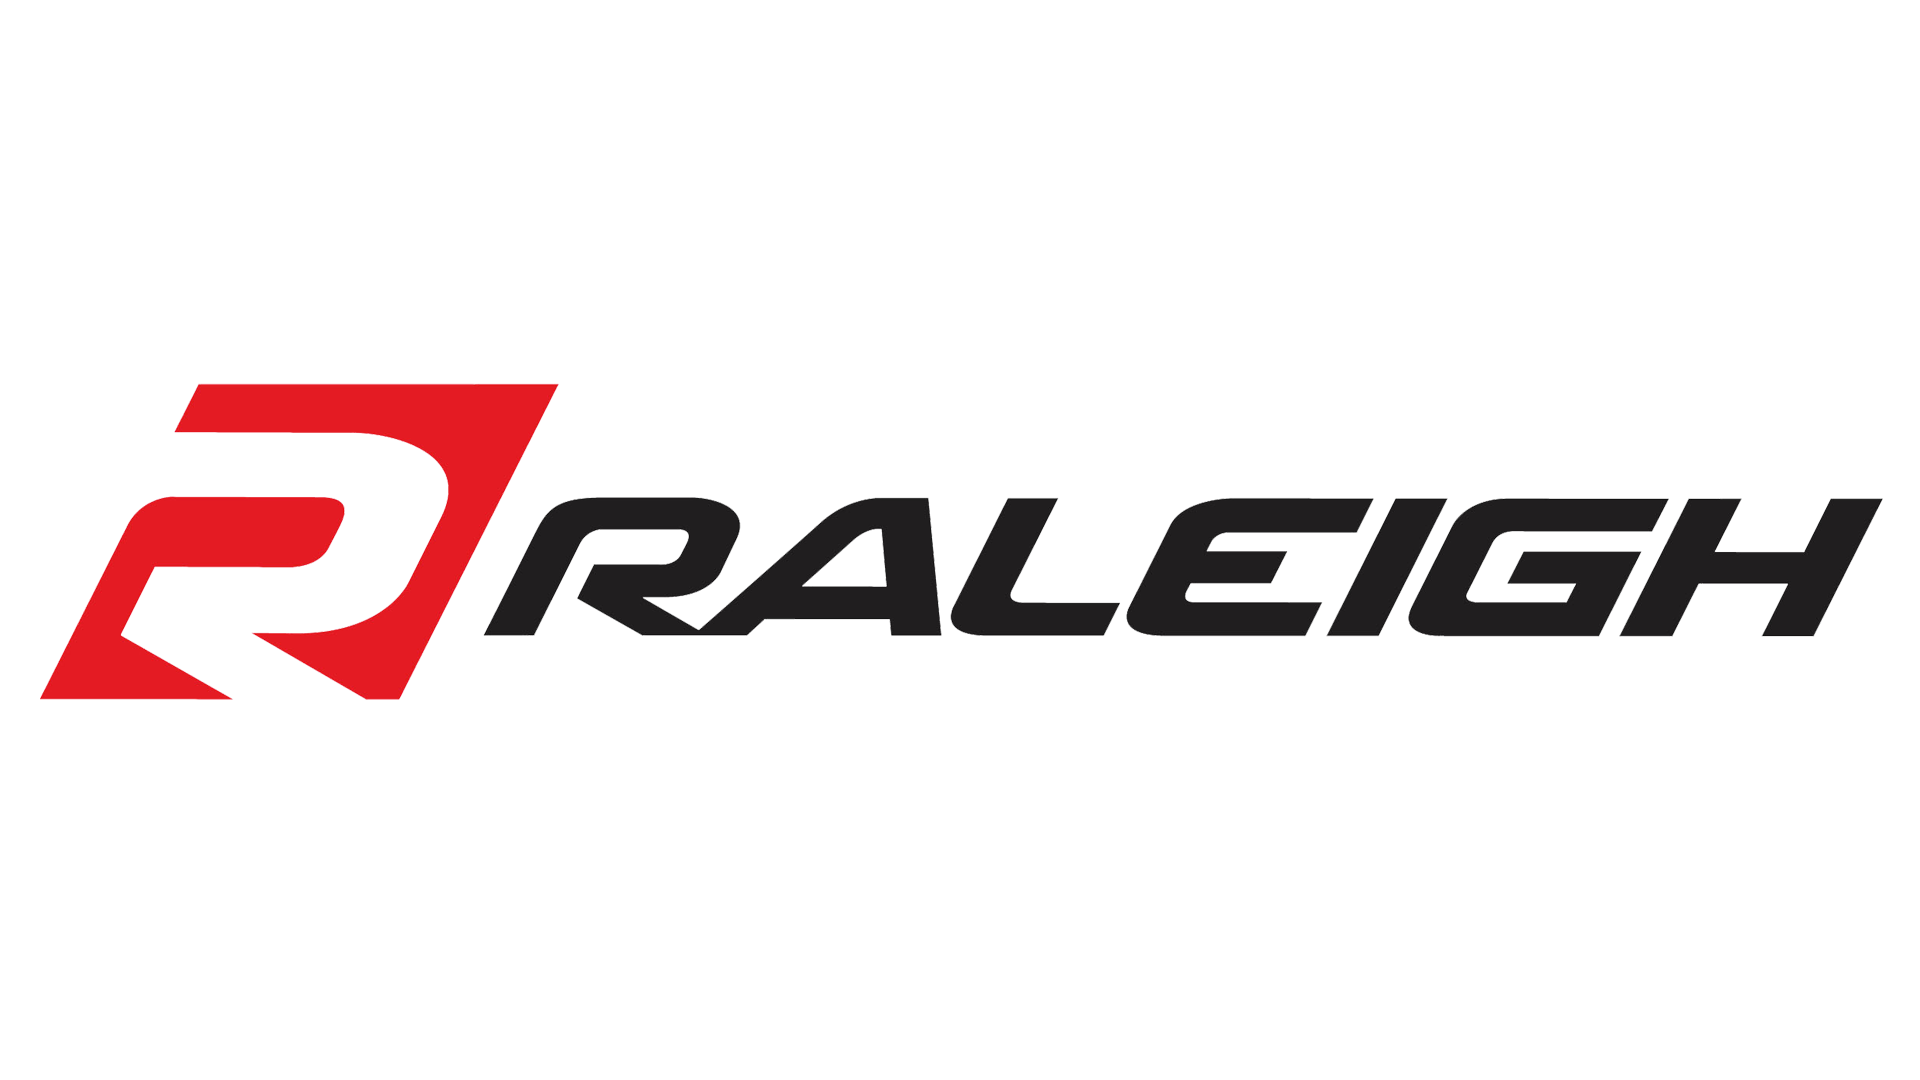 Logo Raleigh